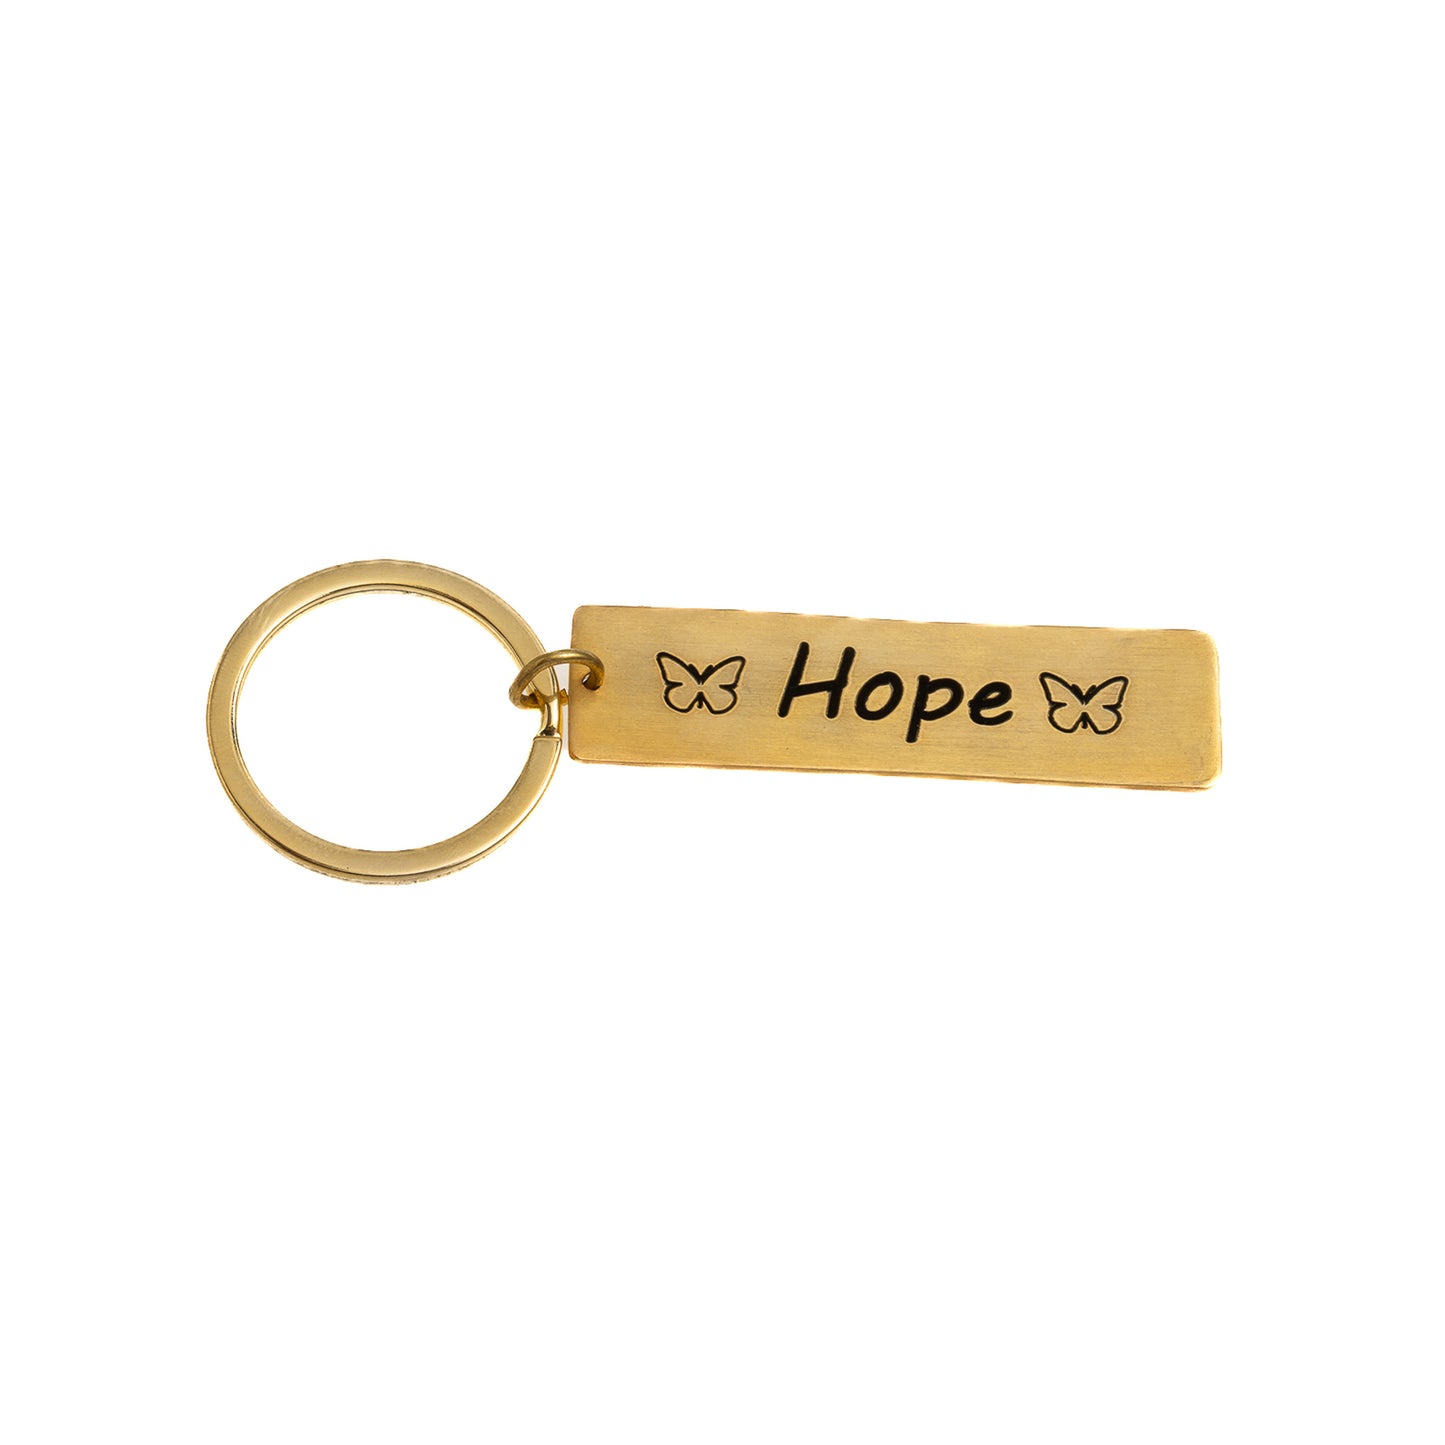 Hope keychain